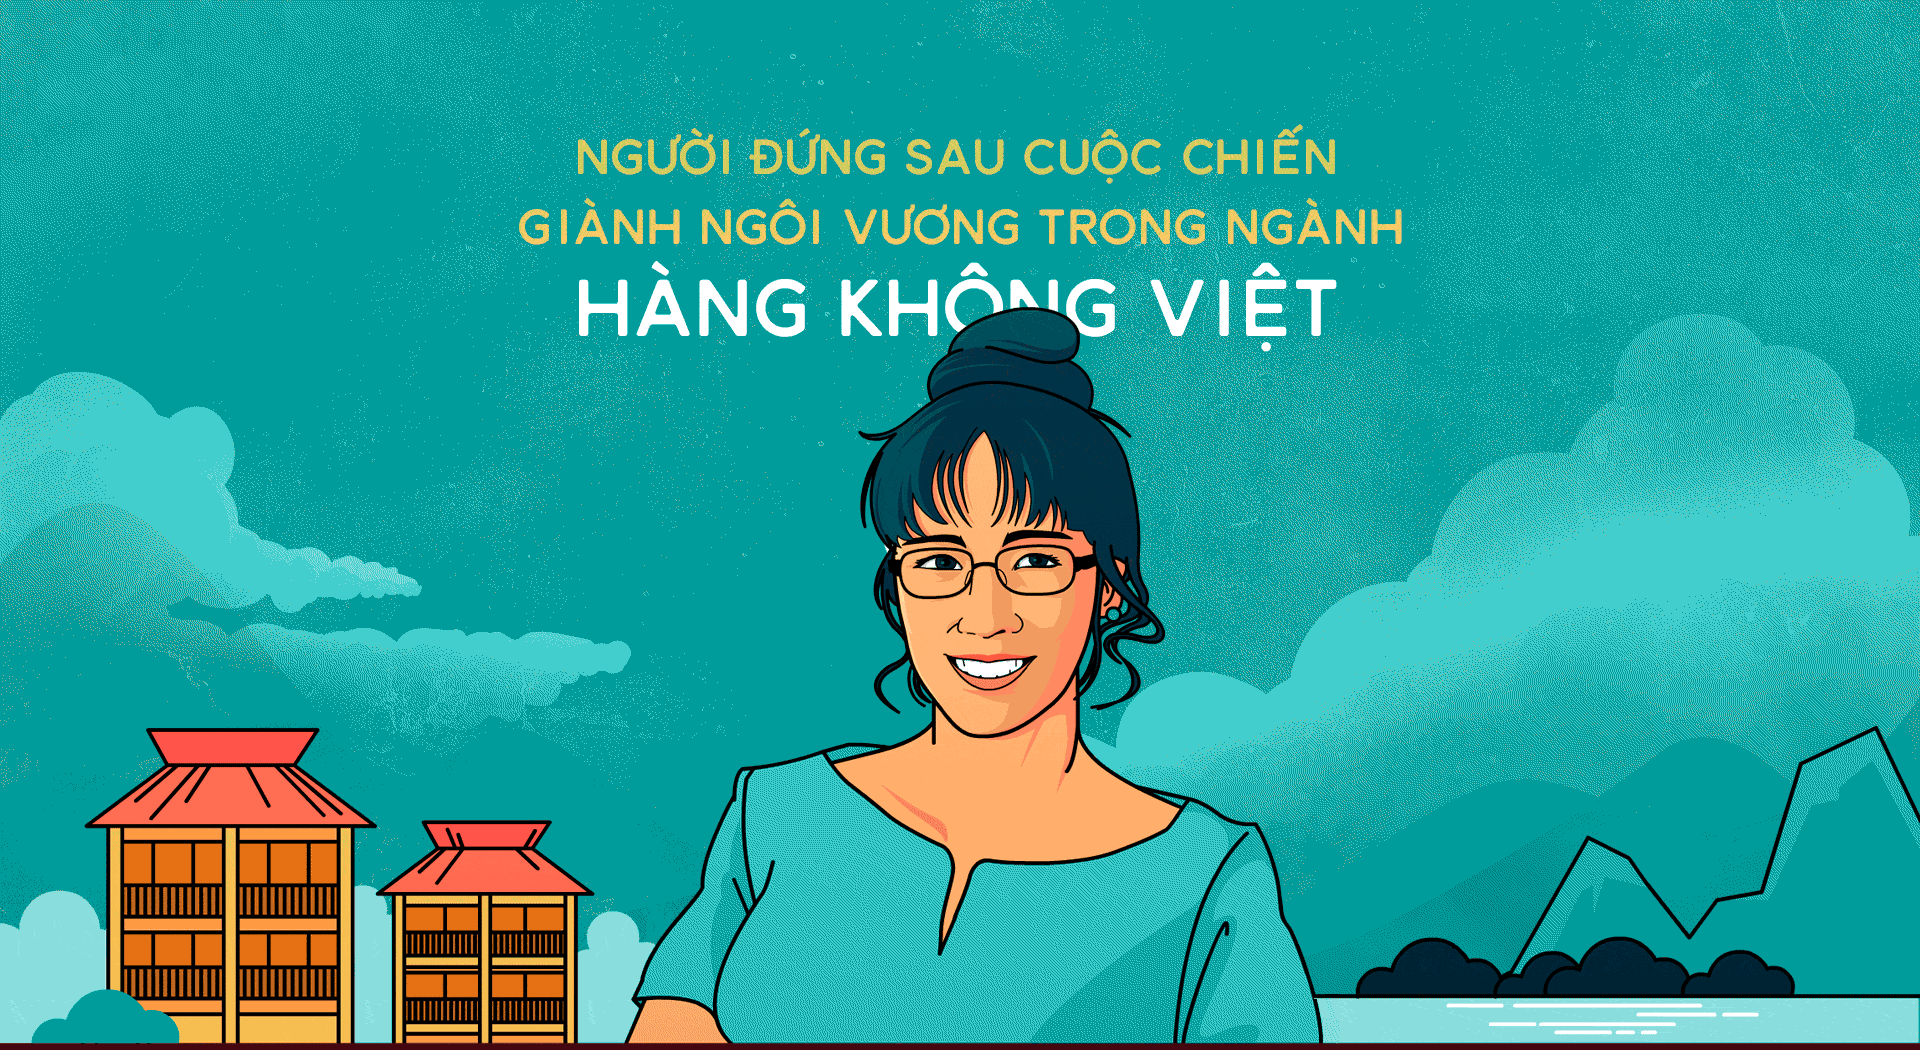 4 doanh nhân tuổi Tuất quyền lực trên thương trường Việt: Có tới 3 người là nữ giới - Ảnh 4.